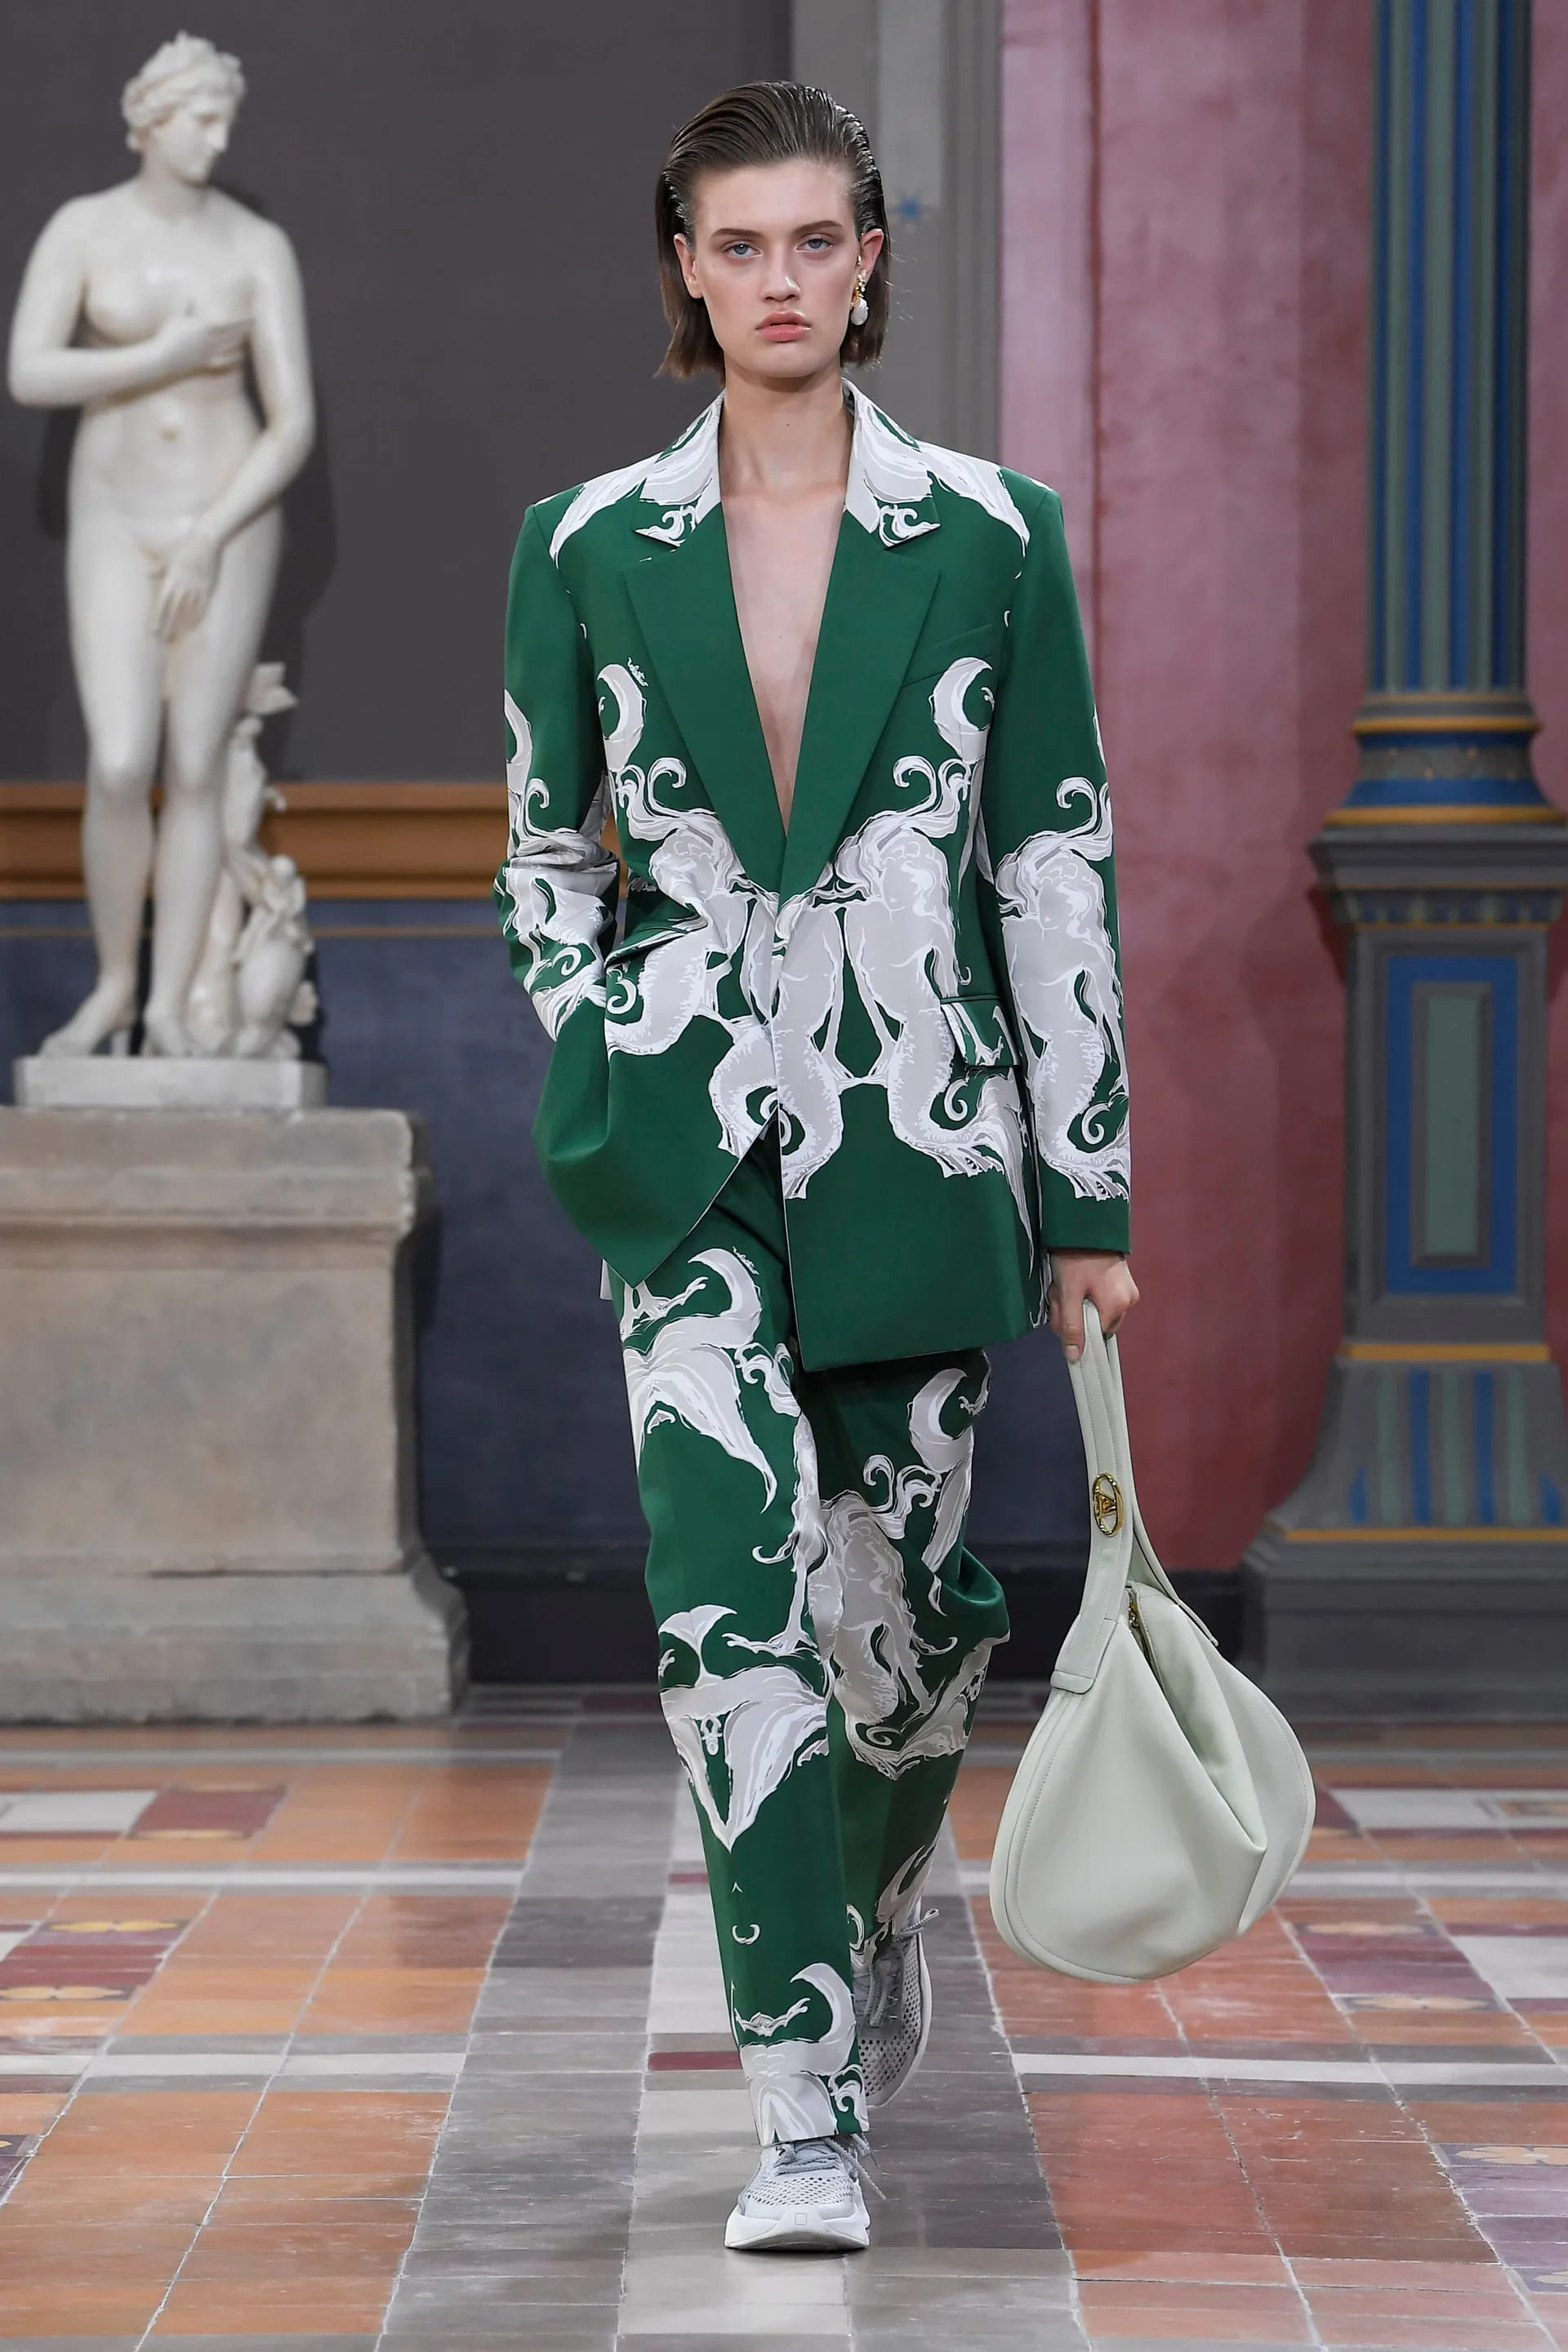  Троянди на сукнях, сиві Хелен Міррен та Енді МакДауелл на подіумі та прощальна колекція Сари Бартон для Alexander McQueen: подробиці Paris Fashion Week - фото 28